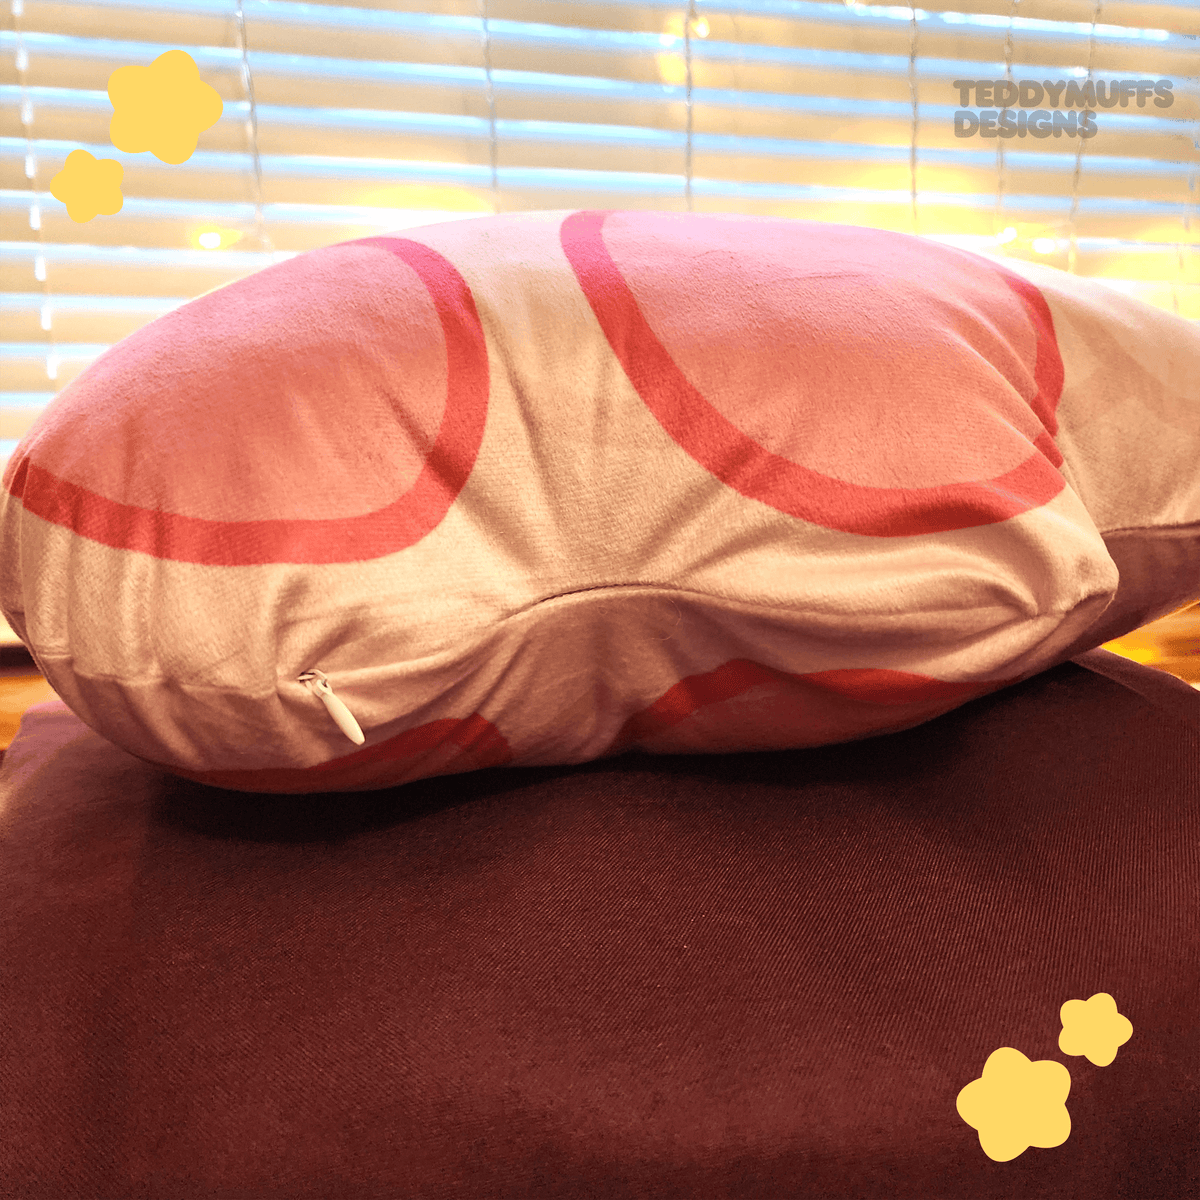 Kirby Pillow